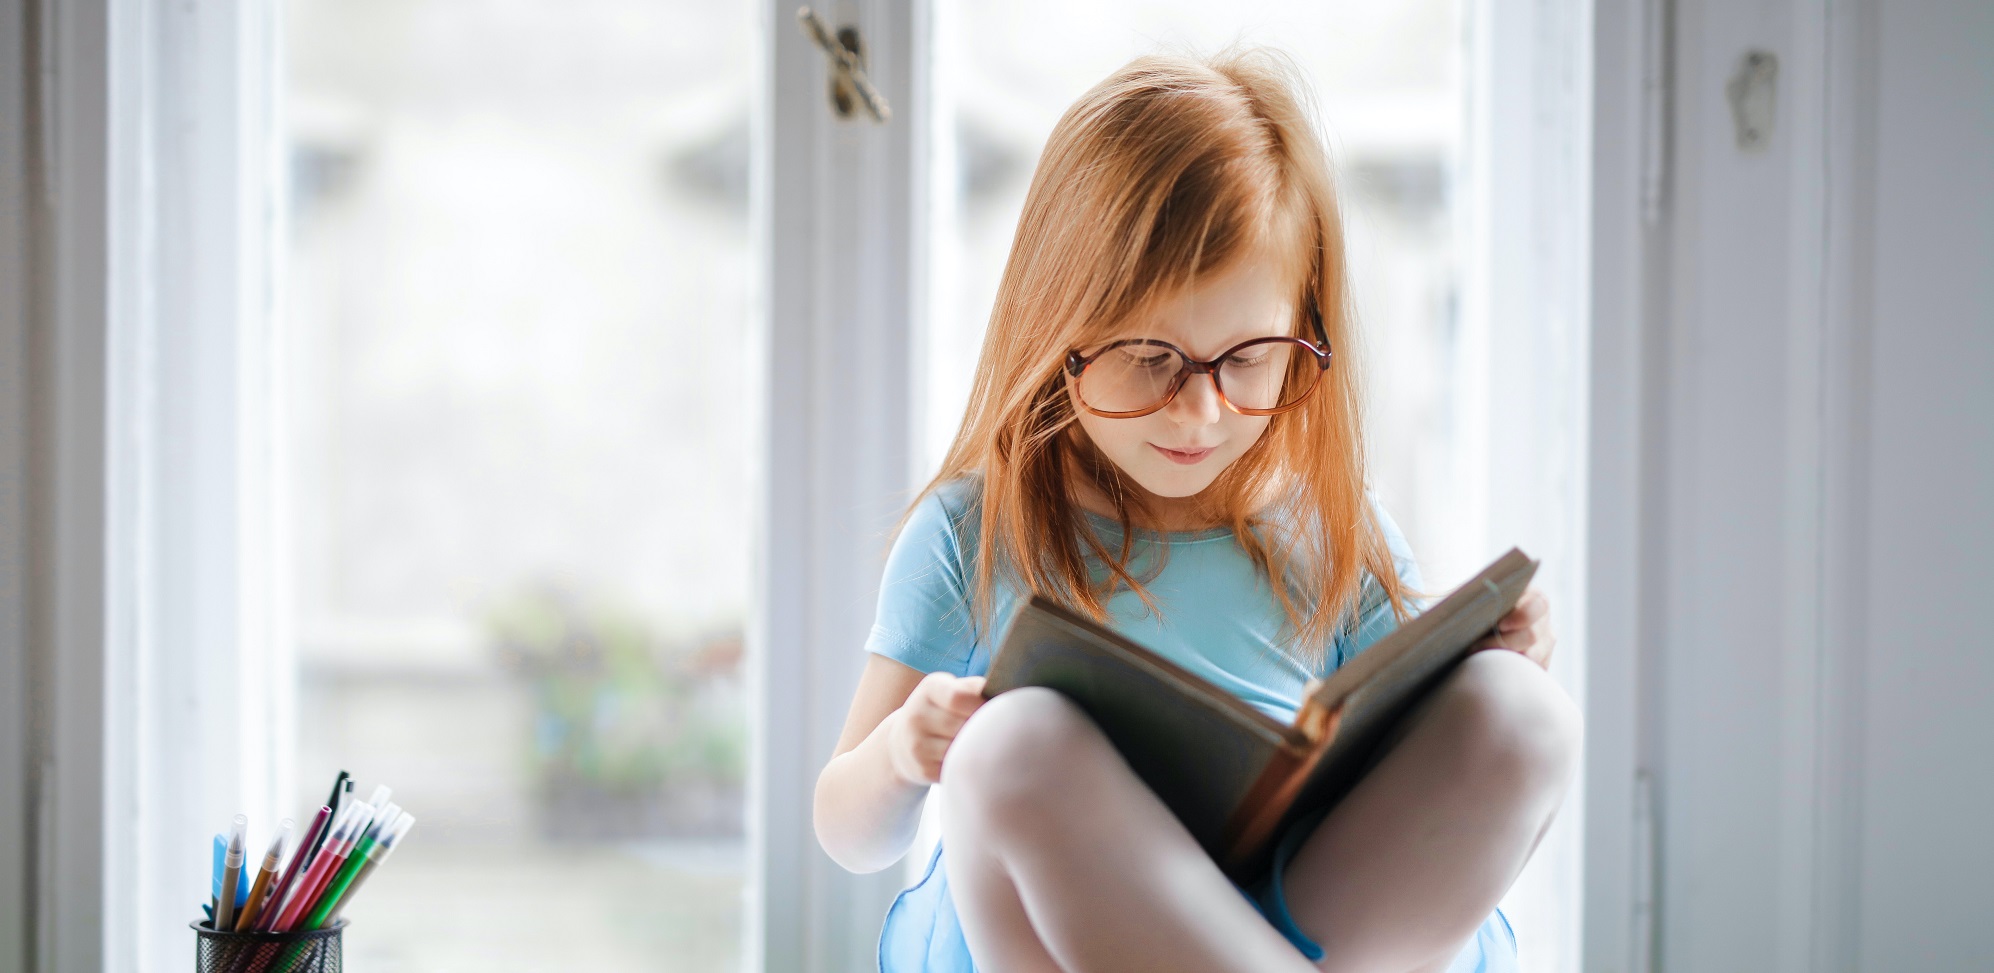 Ein Kind sitzt vor einem Fenster und liest etwas.